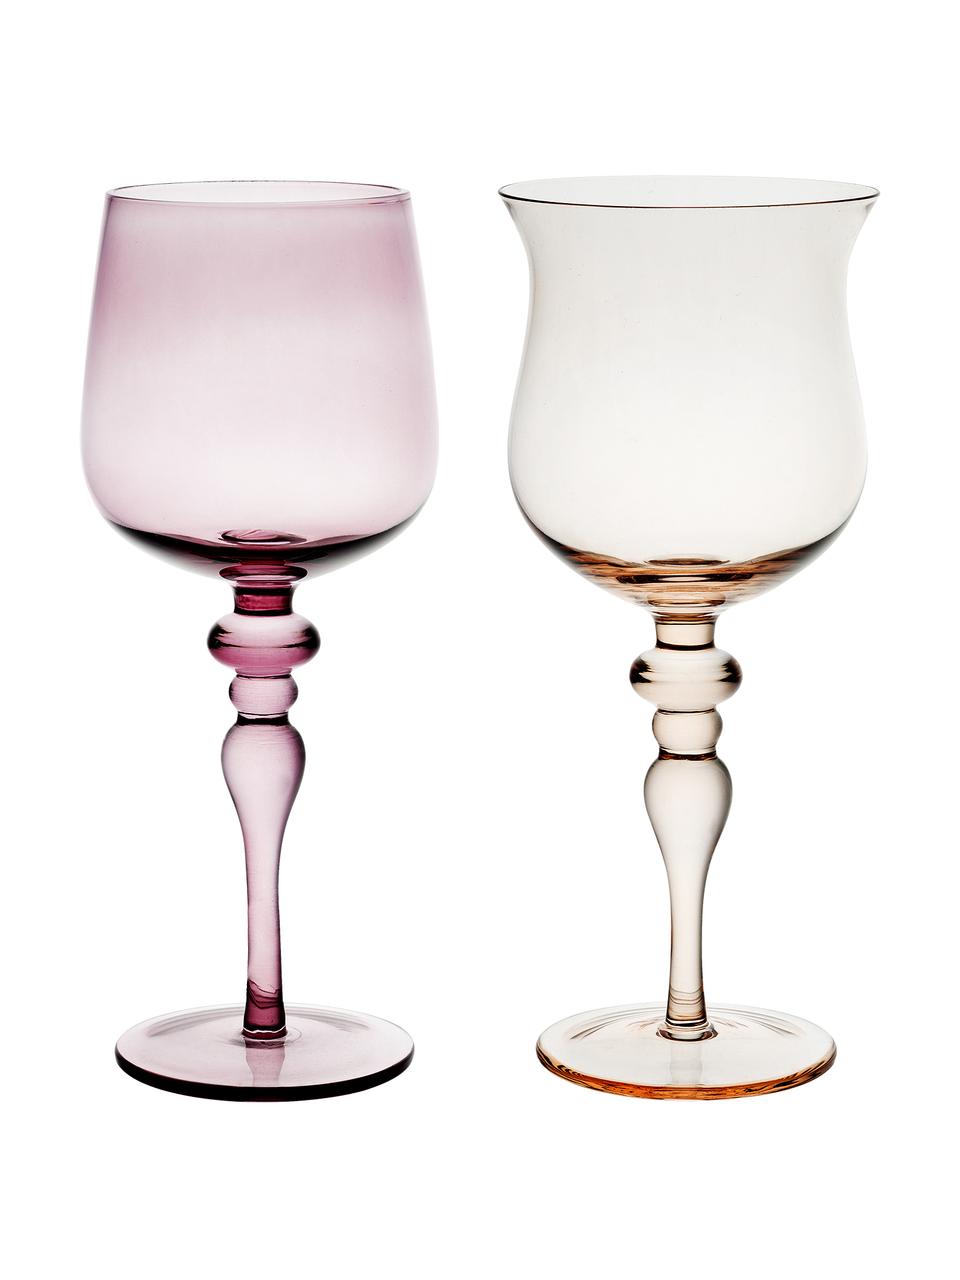 Mondgeblazen wijnglazen Diseguale in verschillende kleuren en vormen, 6 stuks, Mondgeblazen glas, Geeltinten, rozetinten, Ø 8 x H 20 cm, 200 ml